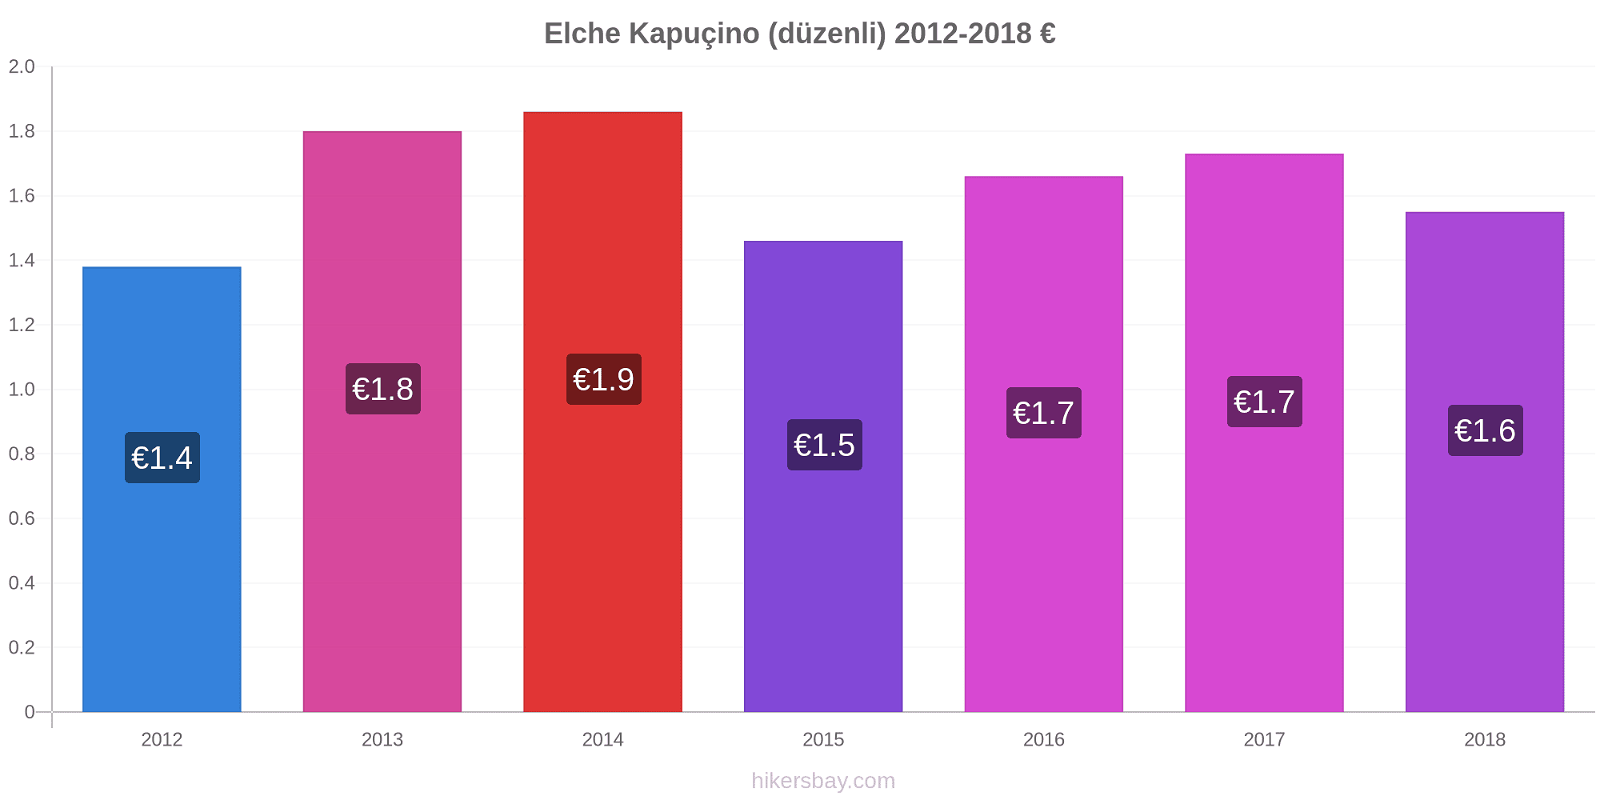 Elche fiyat değişiklikleri Kapuçino (düzenli) hikersbay.com